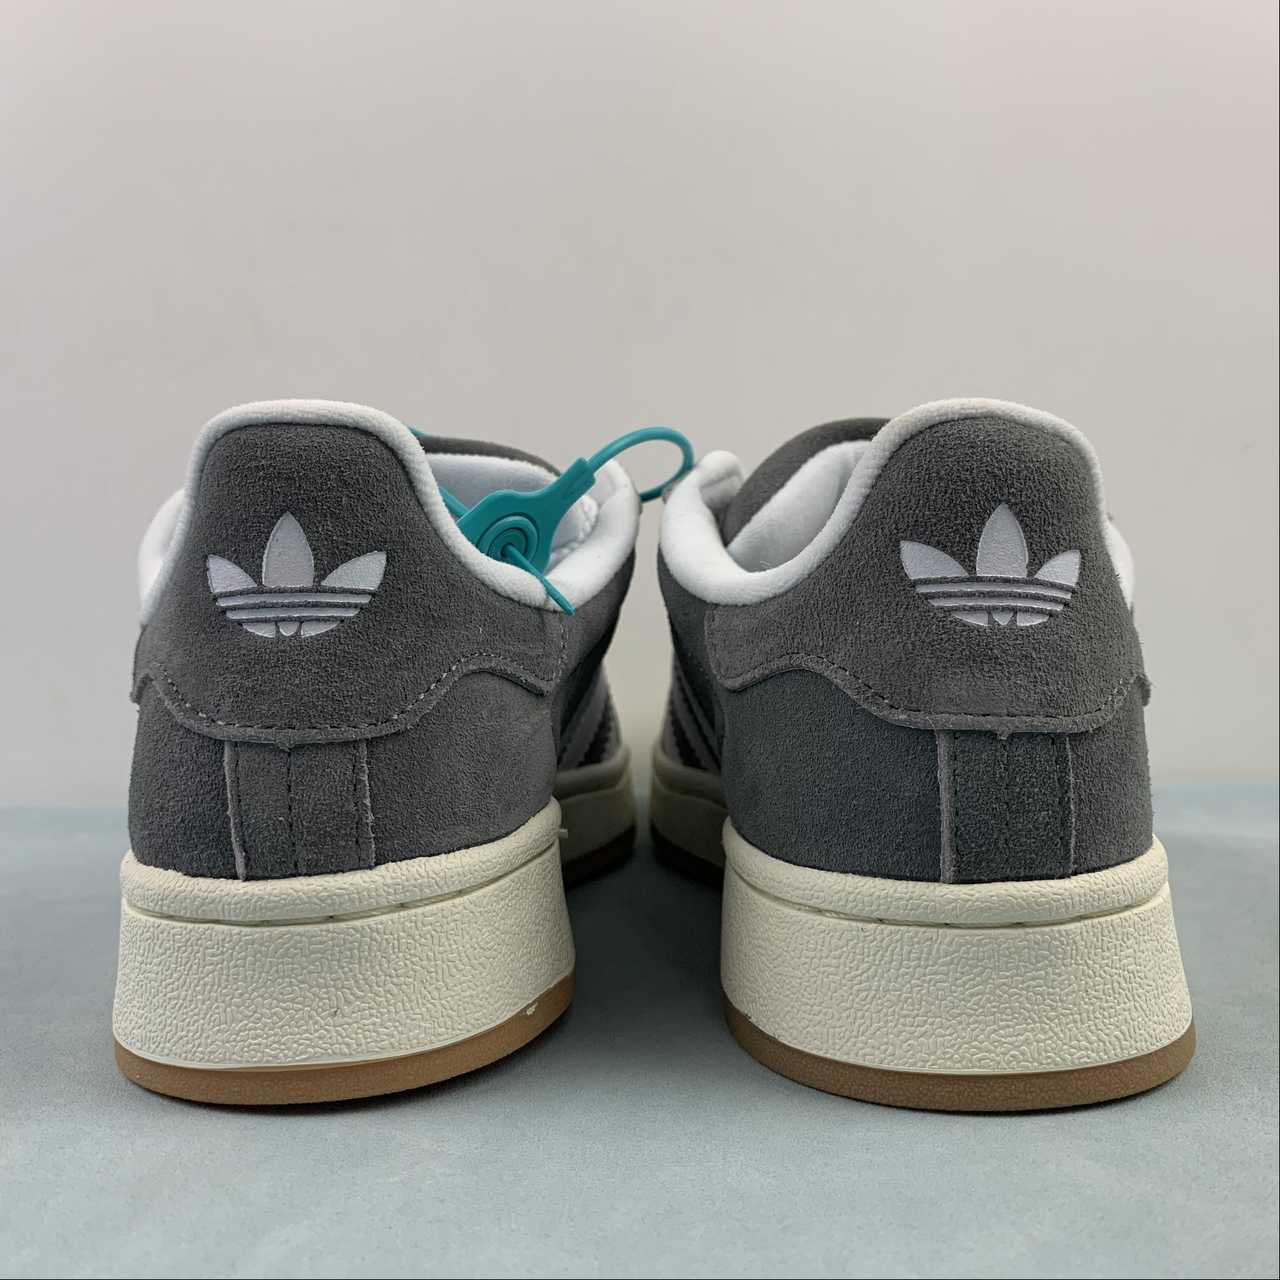 Adidas campus grey shoes